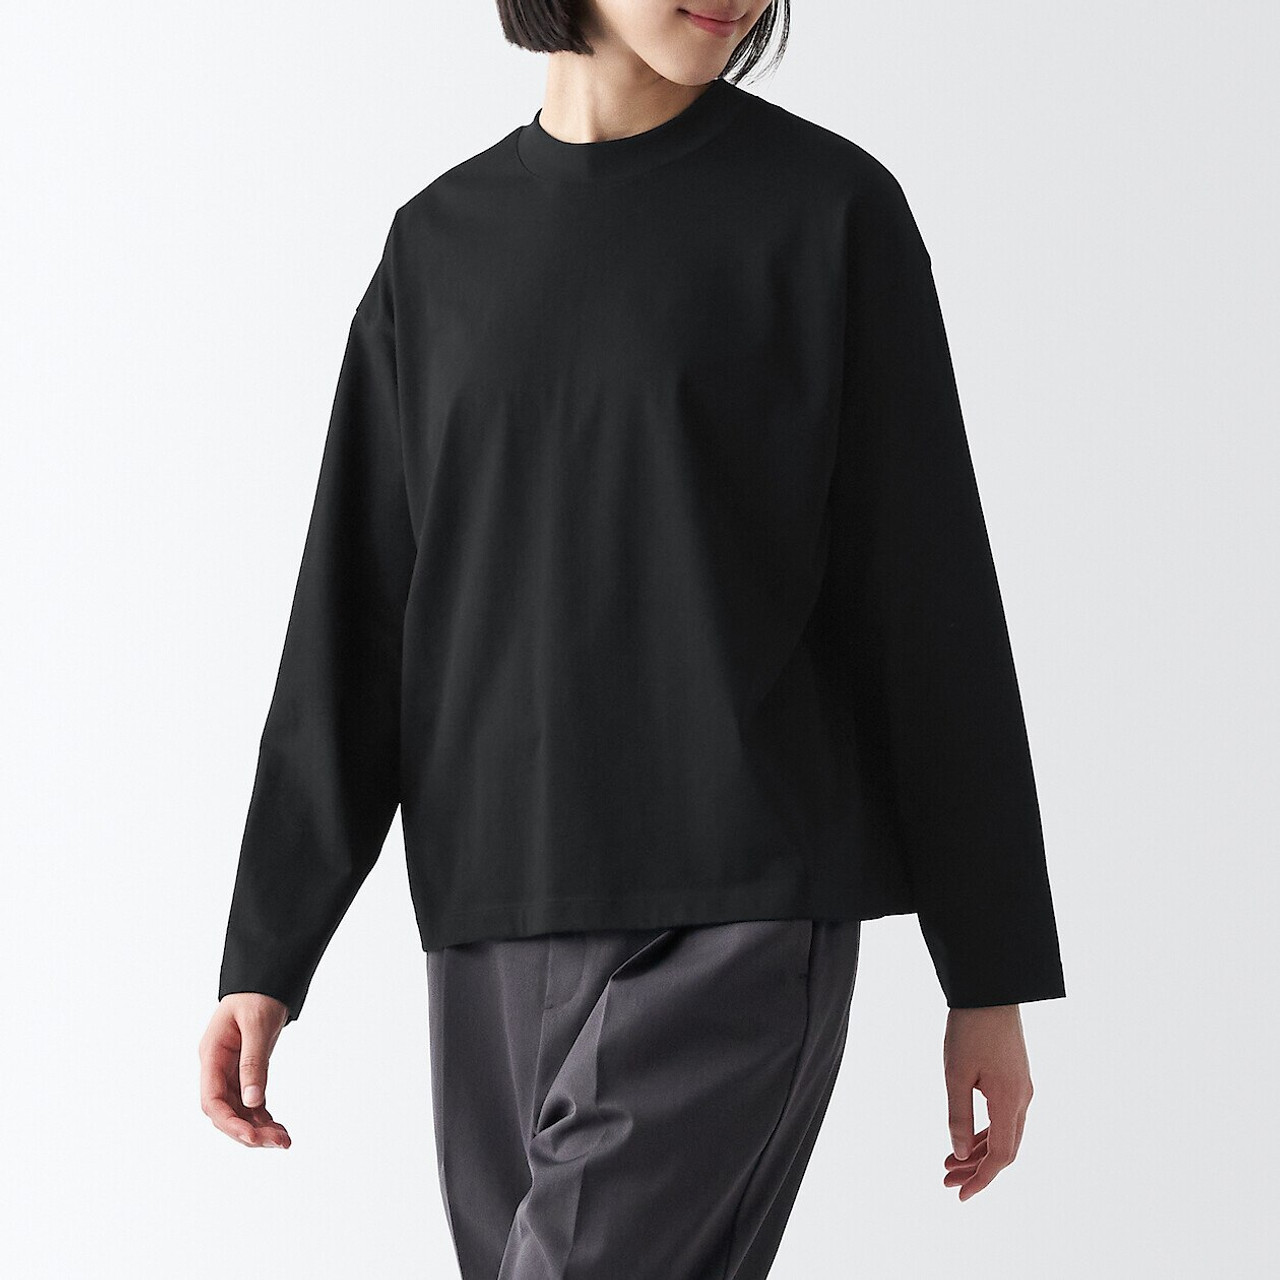 Camiseta de manga larga para mujer, 100 % algodón cepillado/forro polar,  fabricada con orgullo en Italia.